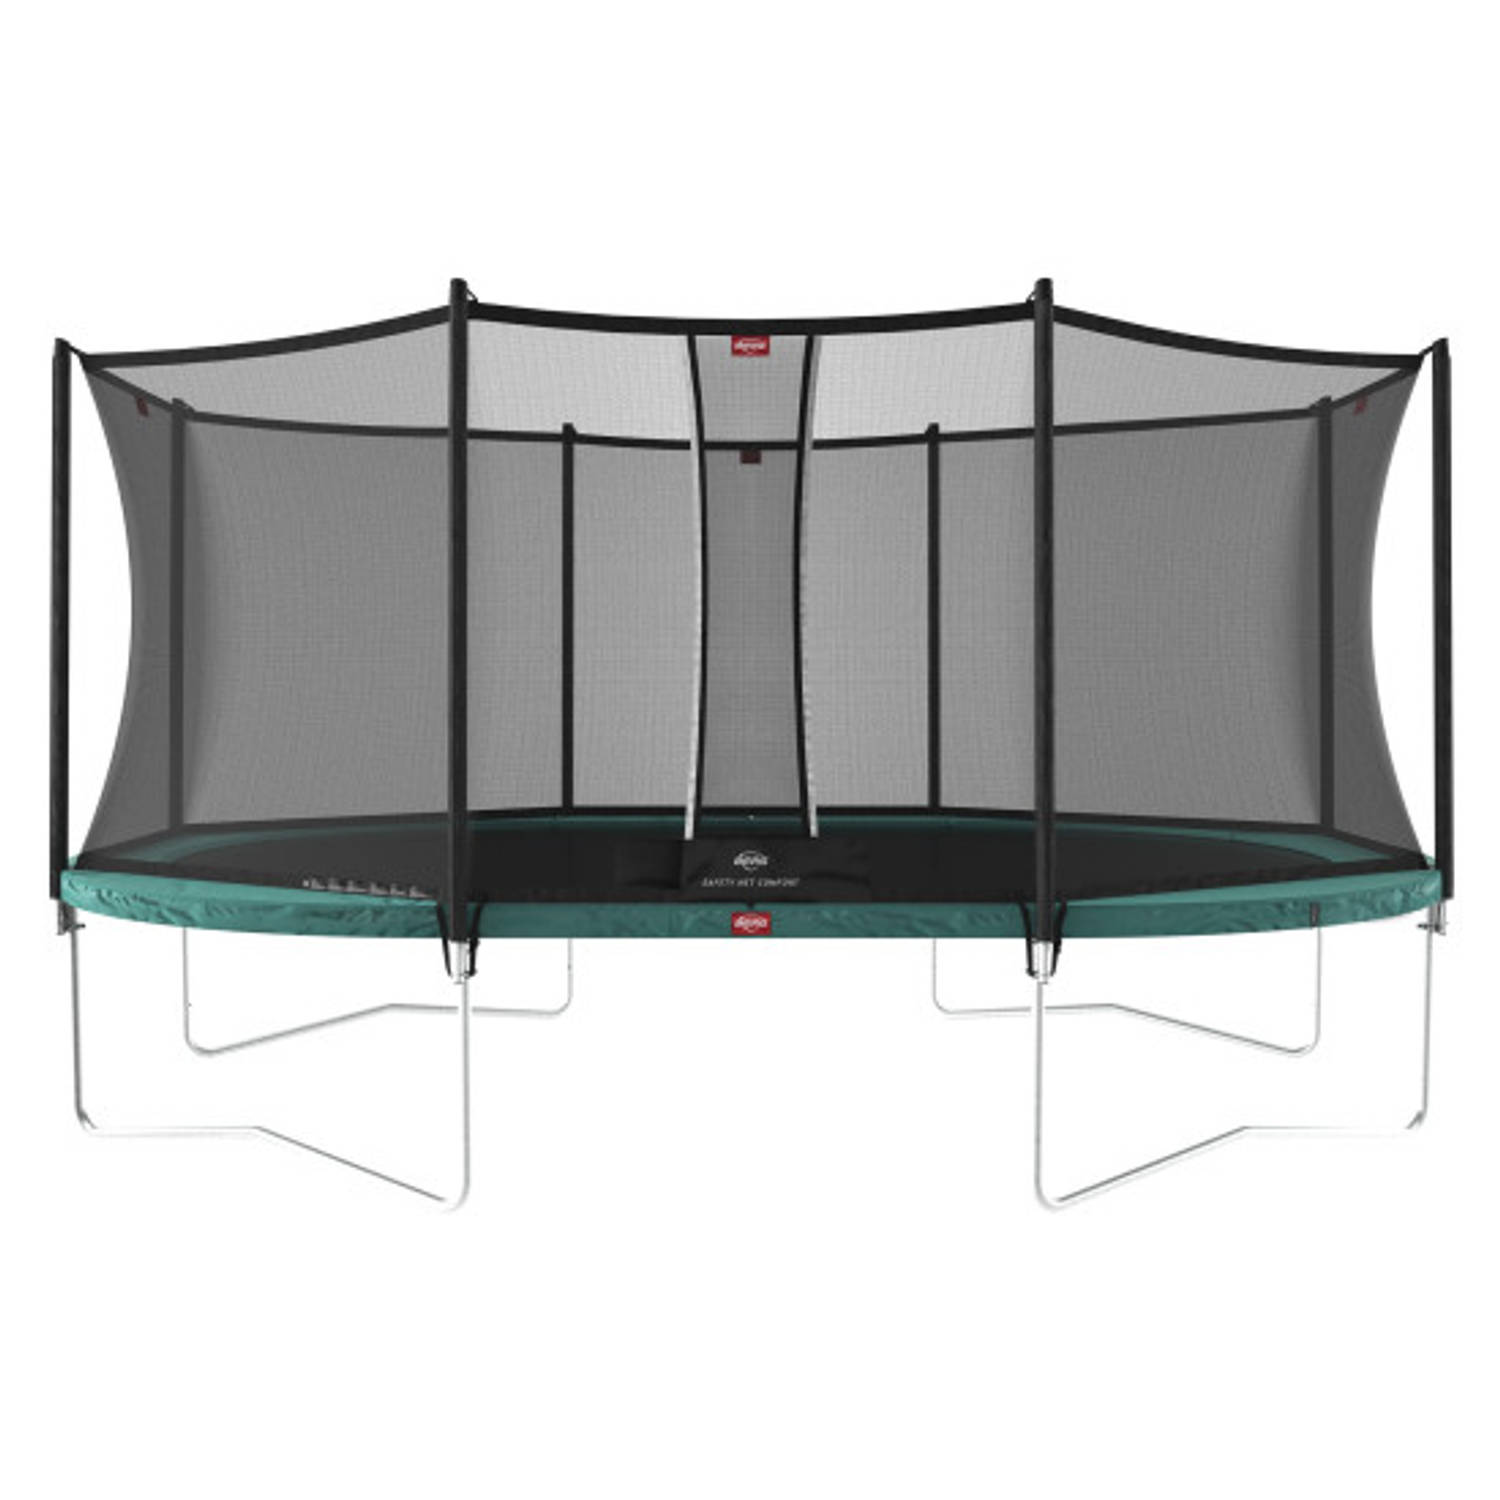 BERG Trampoline Grand Favorit met Veiligheidsnet Safetynet Comfort 520 x 350 cm Groen